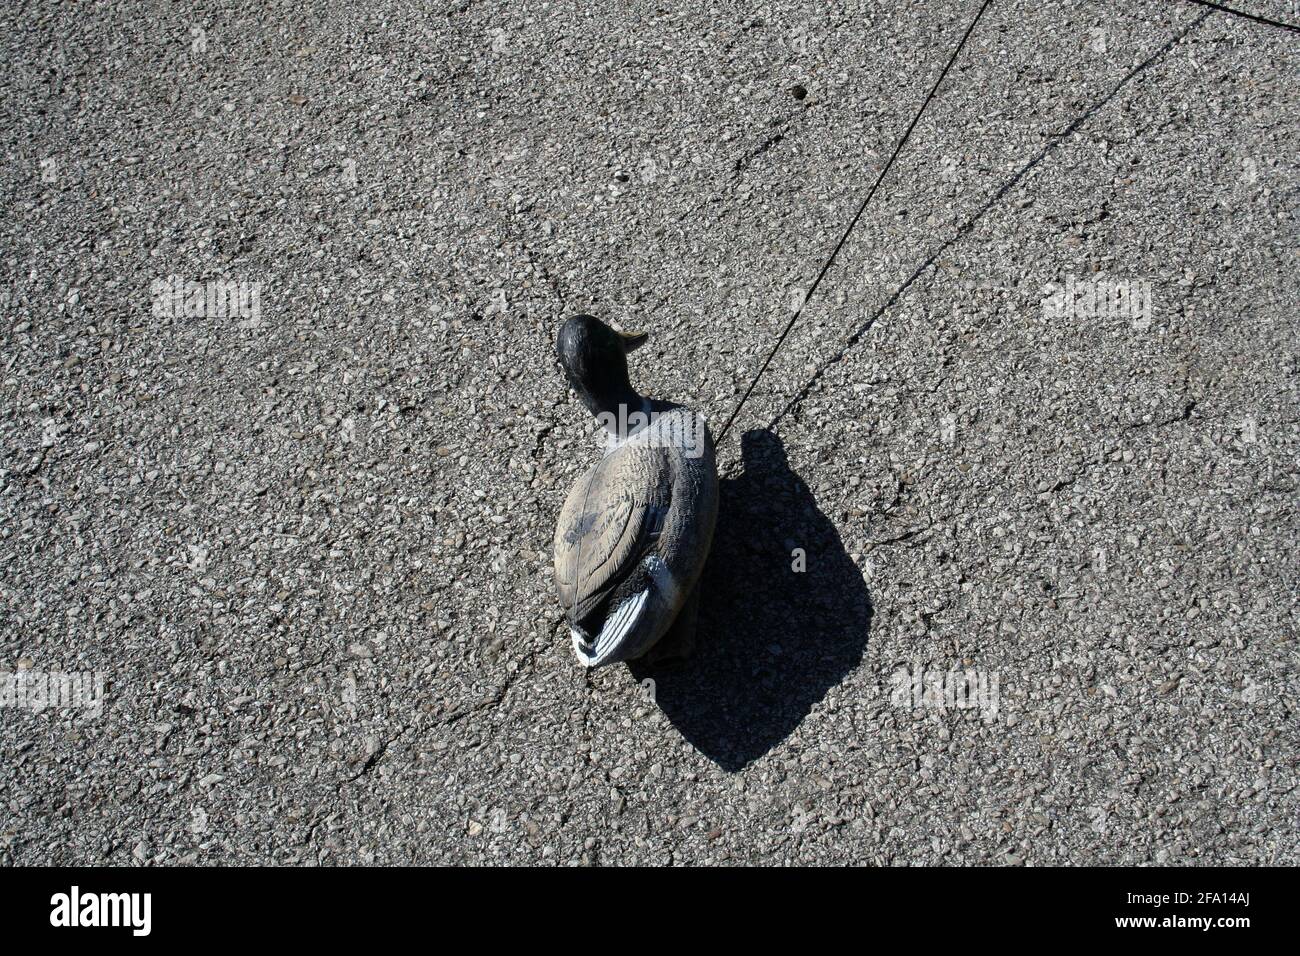 Un leurre de canard en plastique repose sur l'asphalte; sa corde est tirée hors du cadre. Banque D'Images